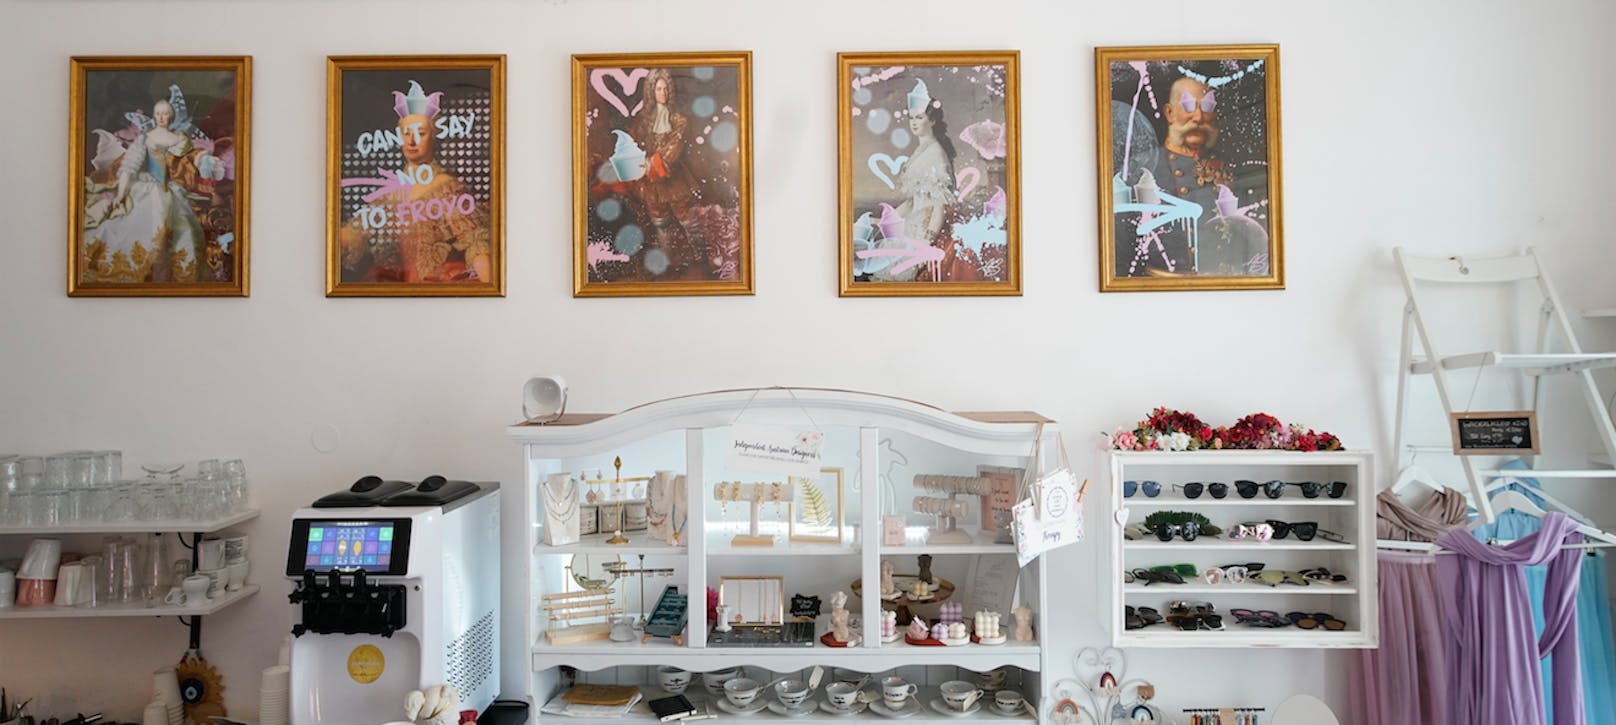 Die kaiserliche Ahnengalerie: Ihnen ist das Frozen Yogurt auf Wiener Art gewidmet.&nbsp;